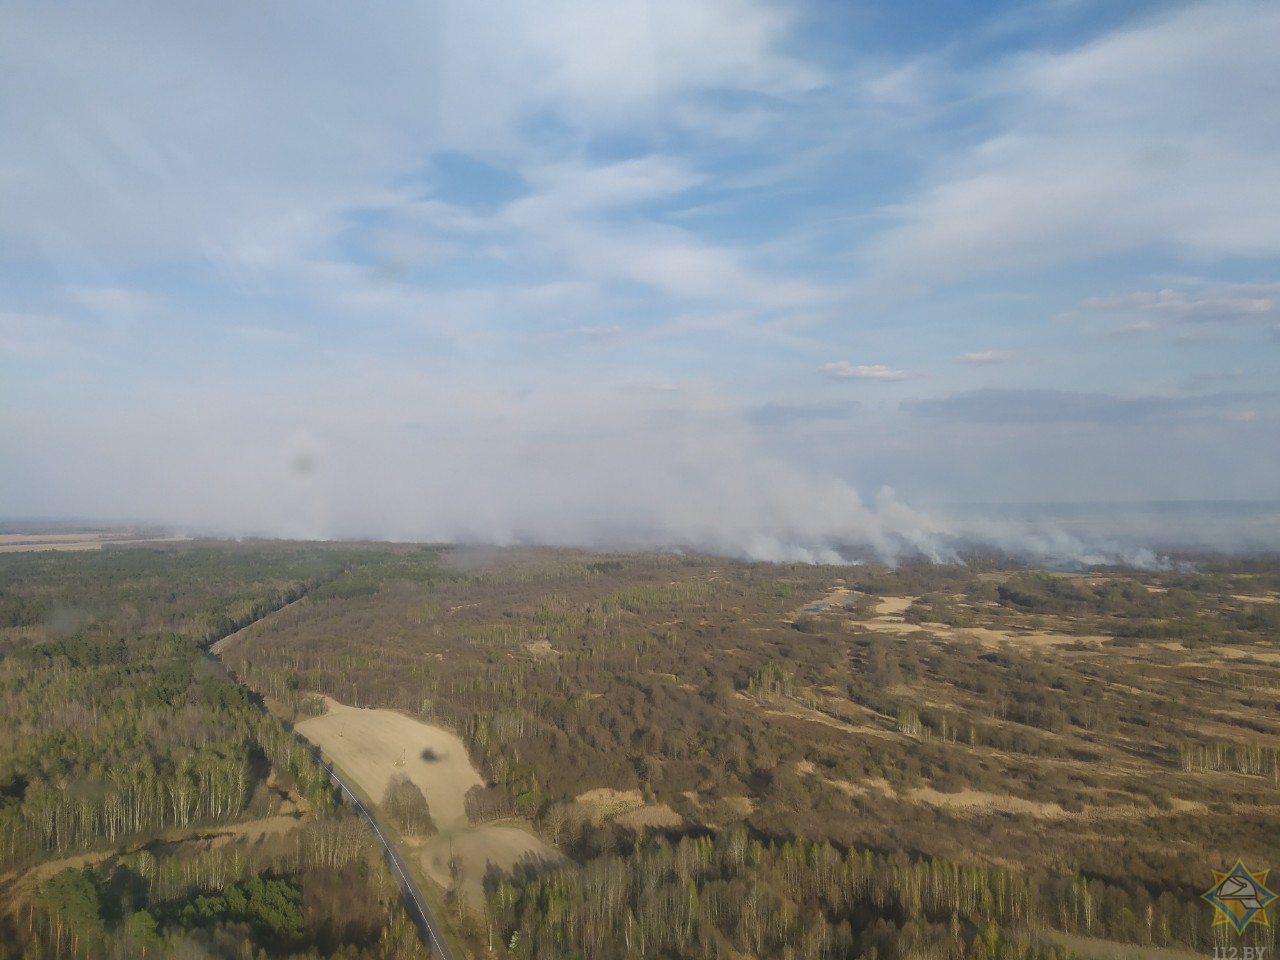 Природный пожар охватил 550 га в Петриковском районе